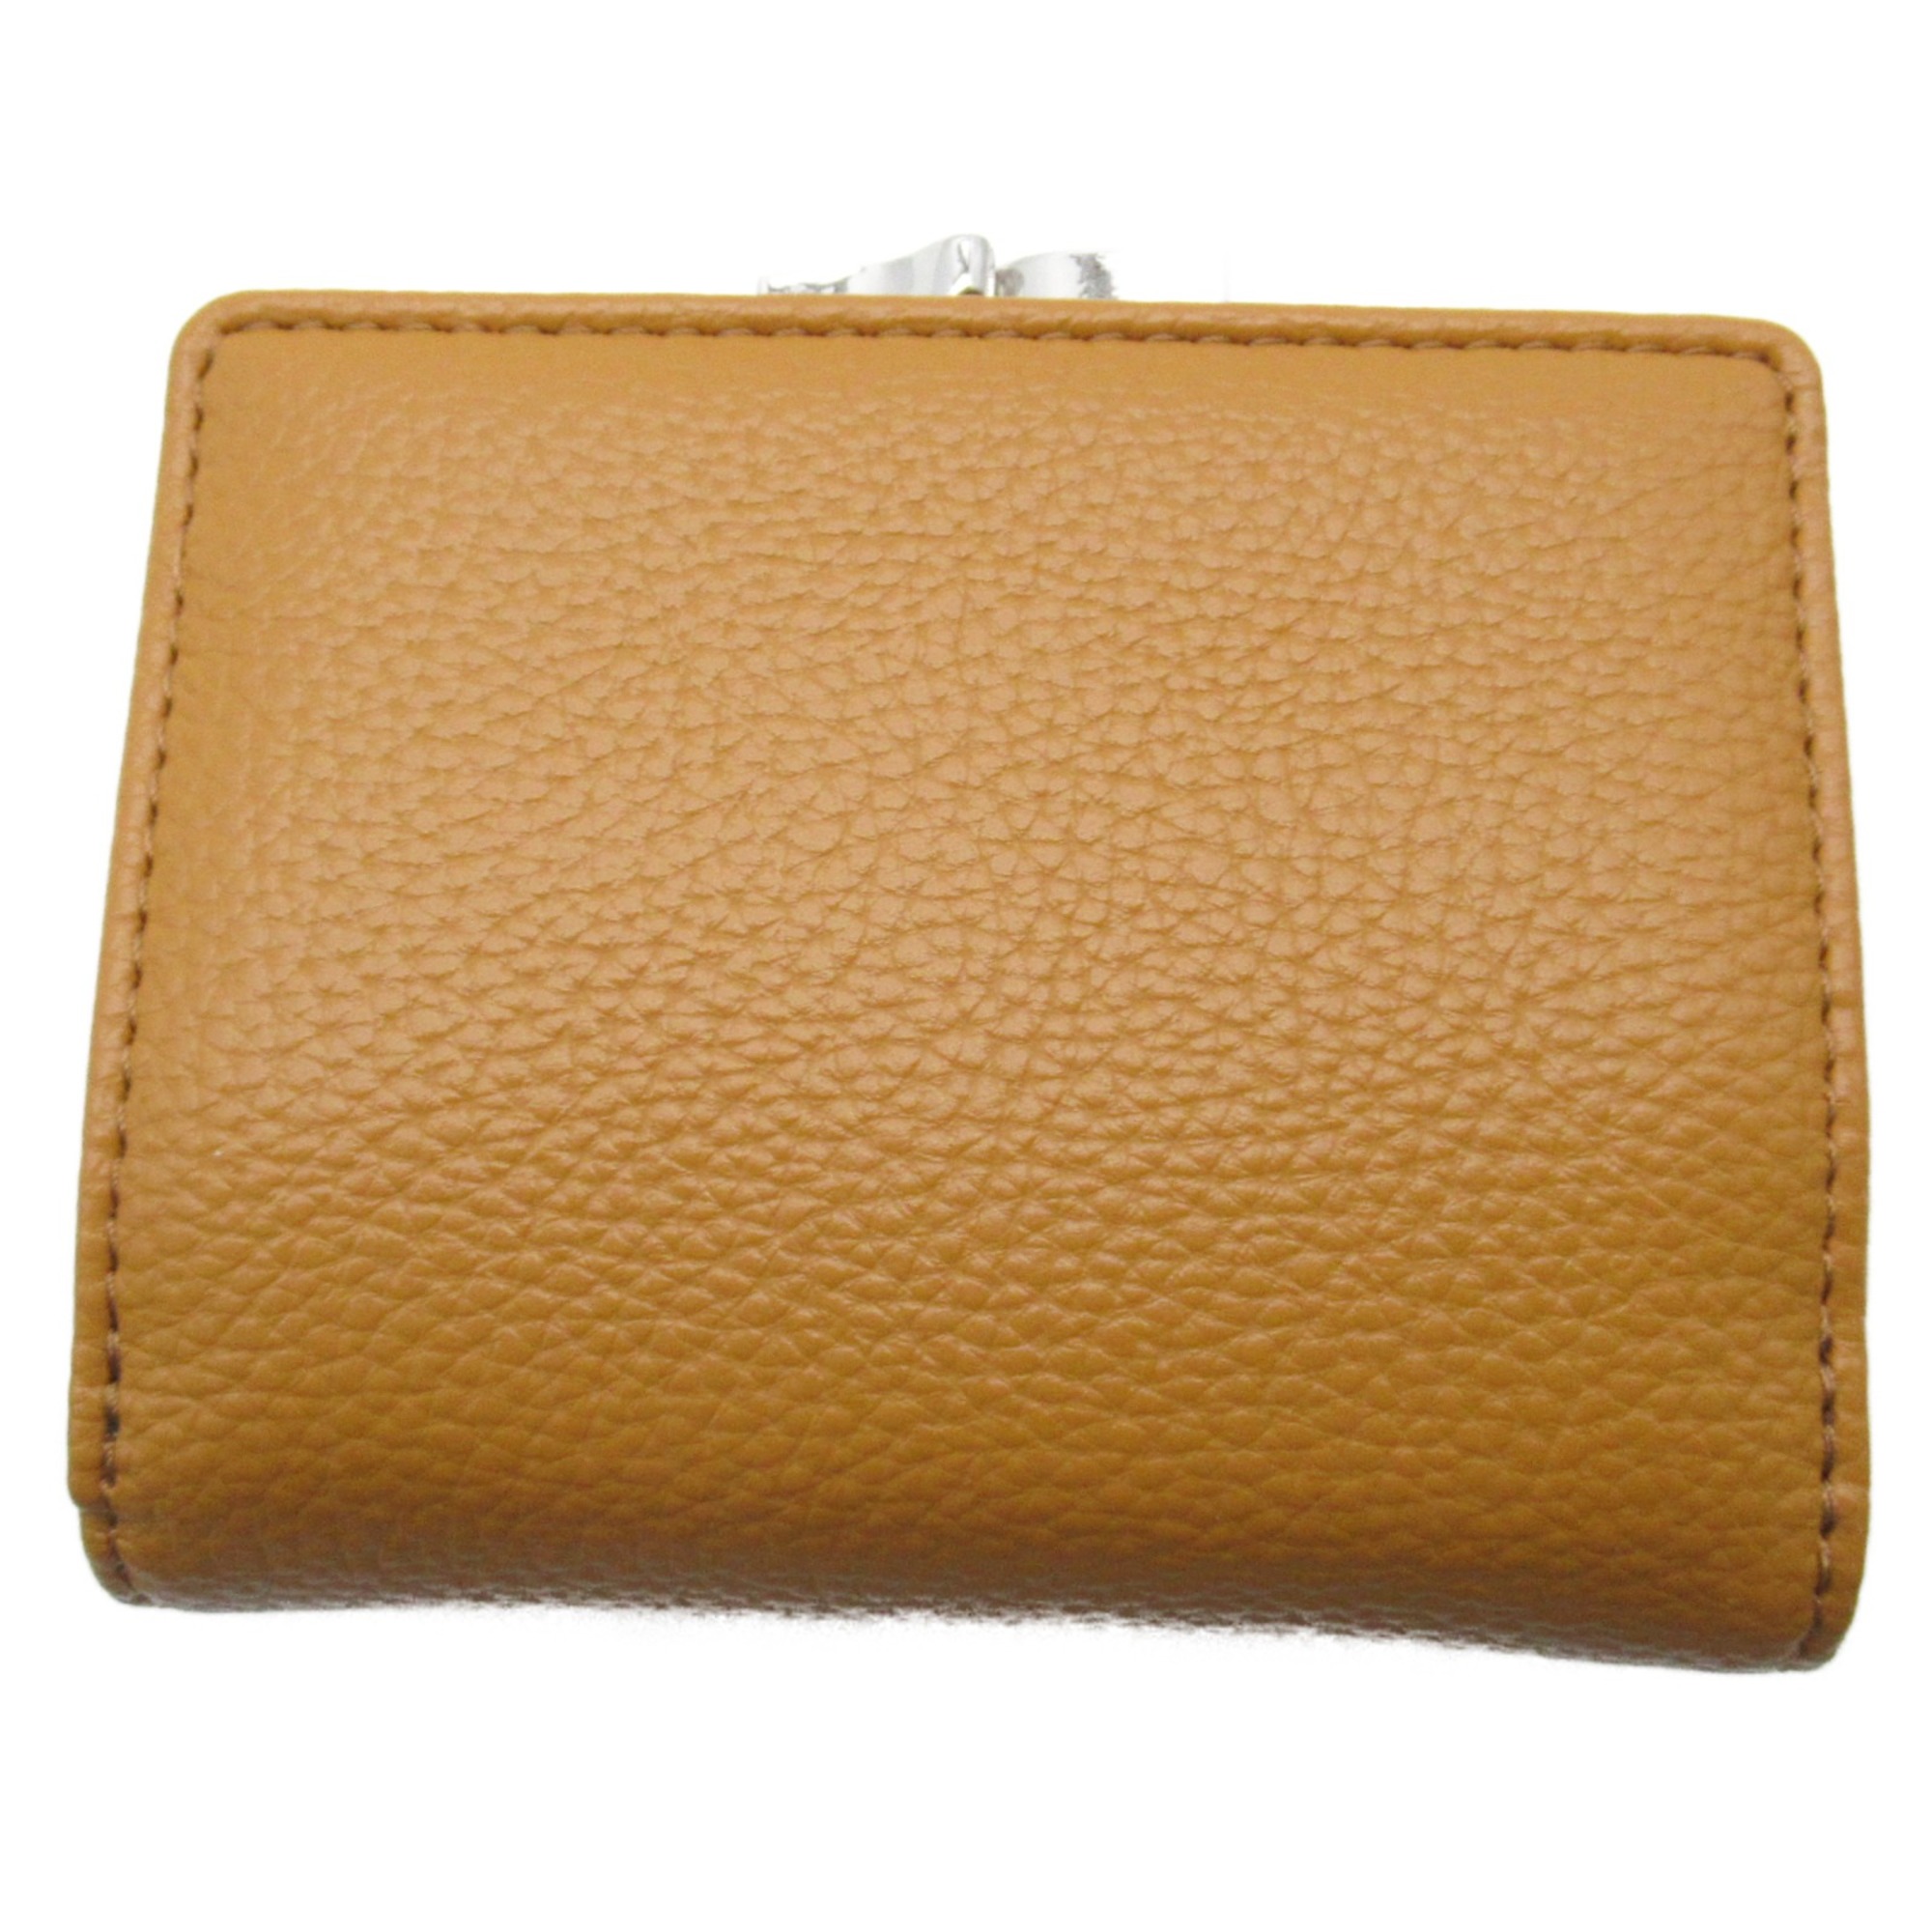 Vivienne Westwood Purse Wallet Yellow leather Grain leather 51010018S000DE401